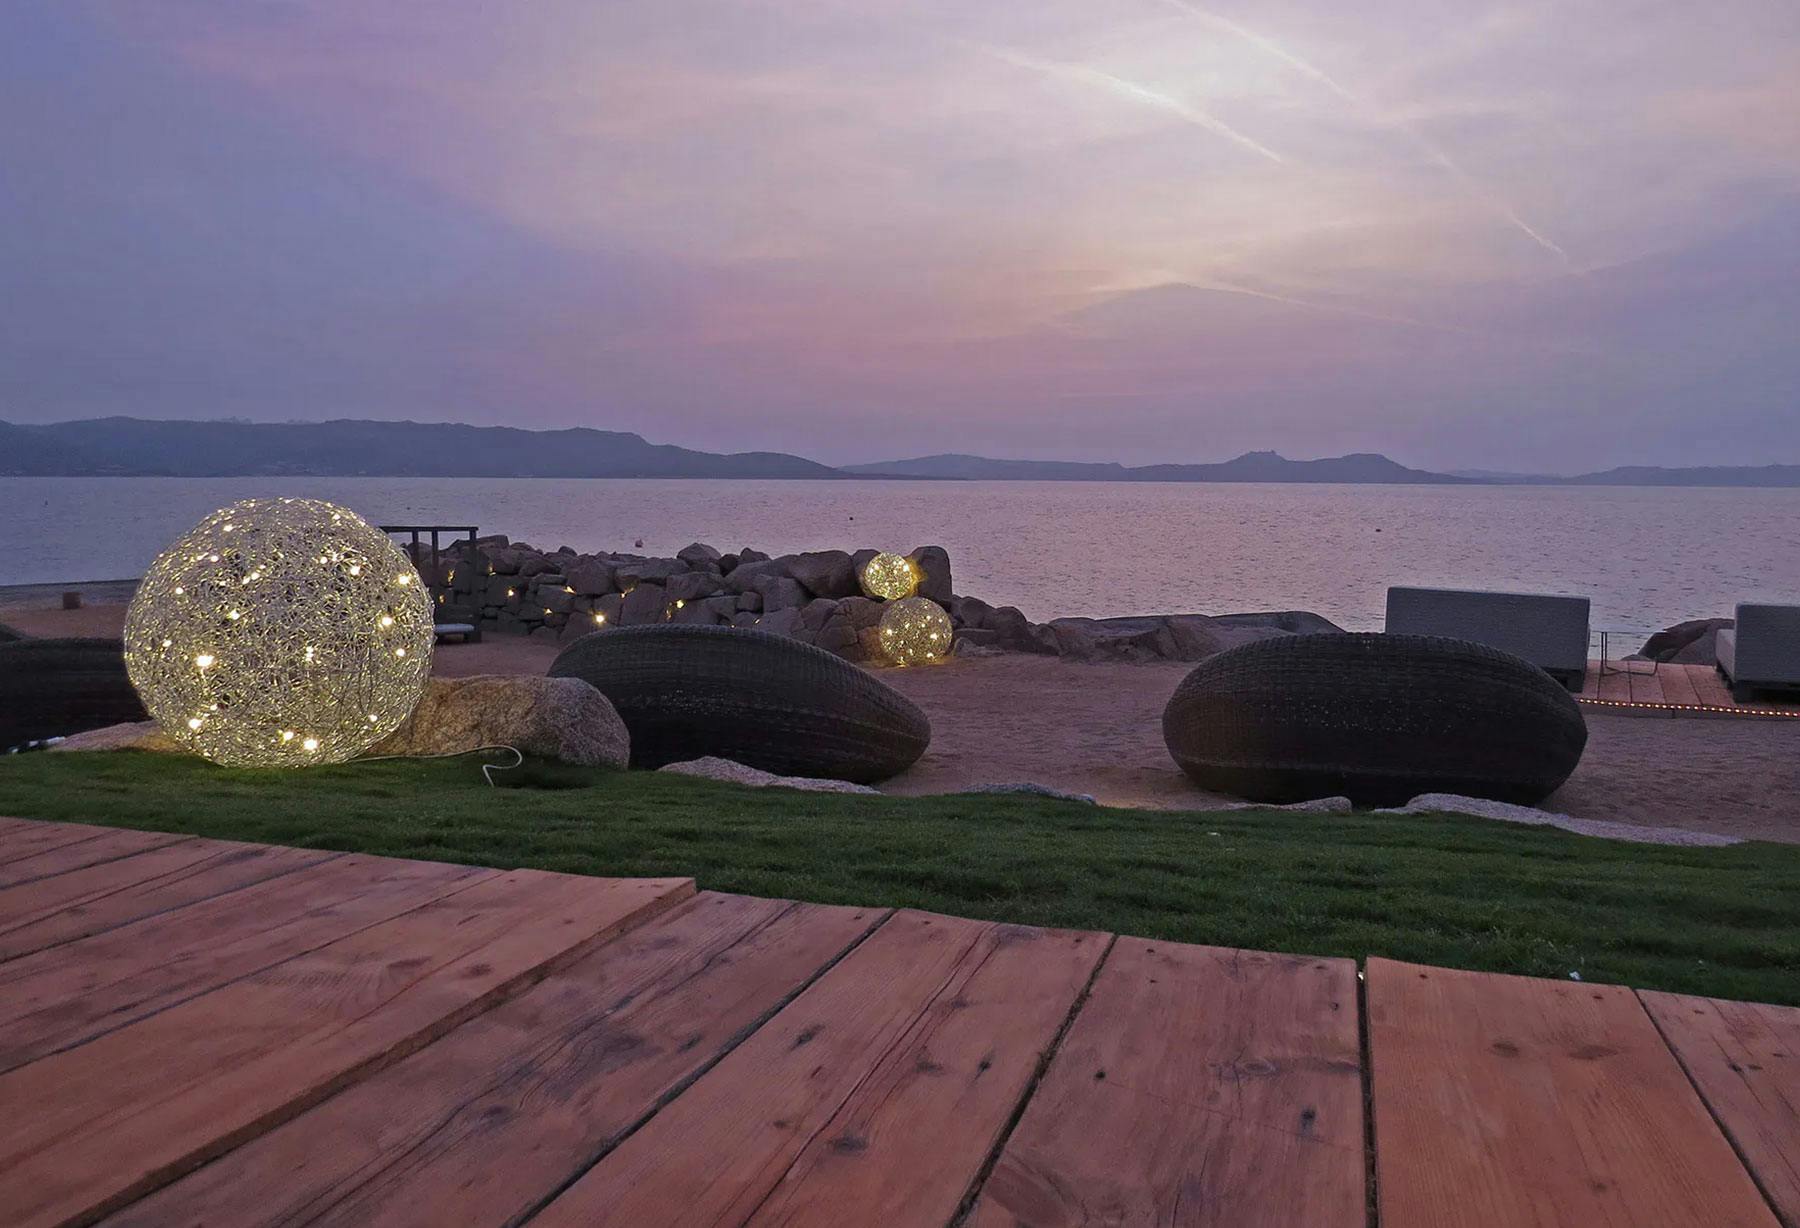 <p>Il Phi Beach in Costa Smeralda, Sardegna, diventa la vetrina perfetta per lampade della collezione da esterno grazie ad una location di rara bellezza e suggestione. La sua impareggiabile posizione naturale regala ogni giorno l&#8217;emozione di uno dei tramonti più belli del mondo.</p>
